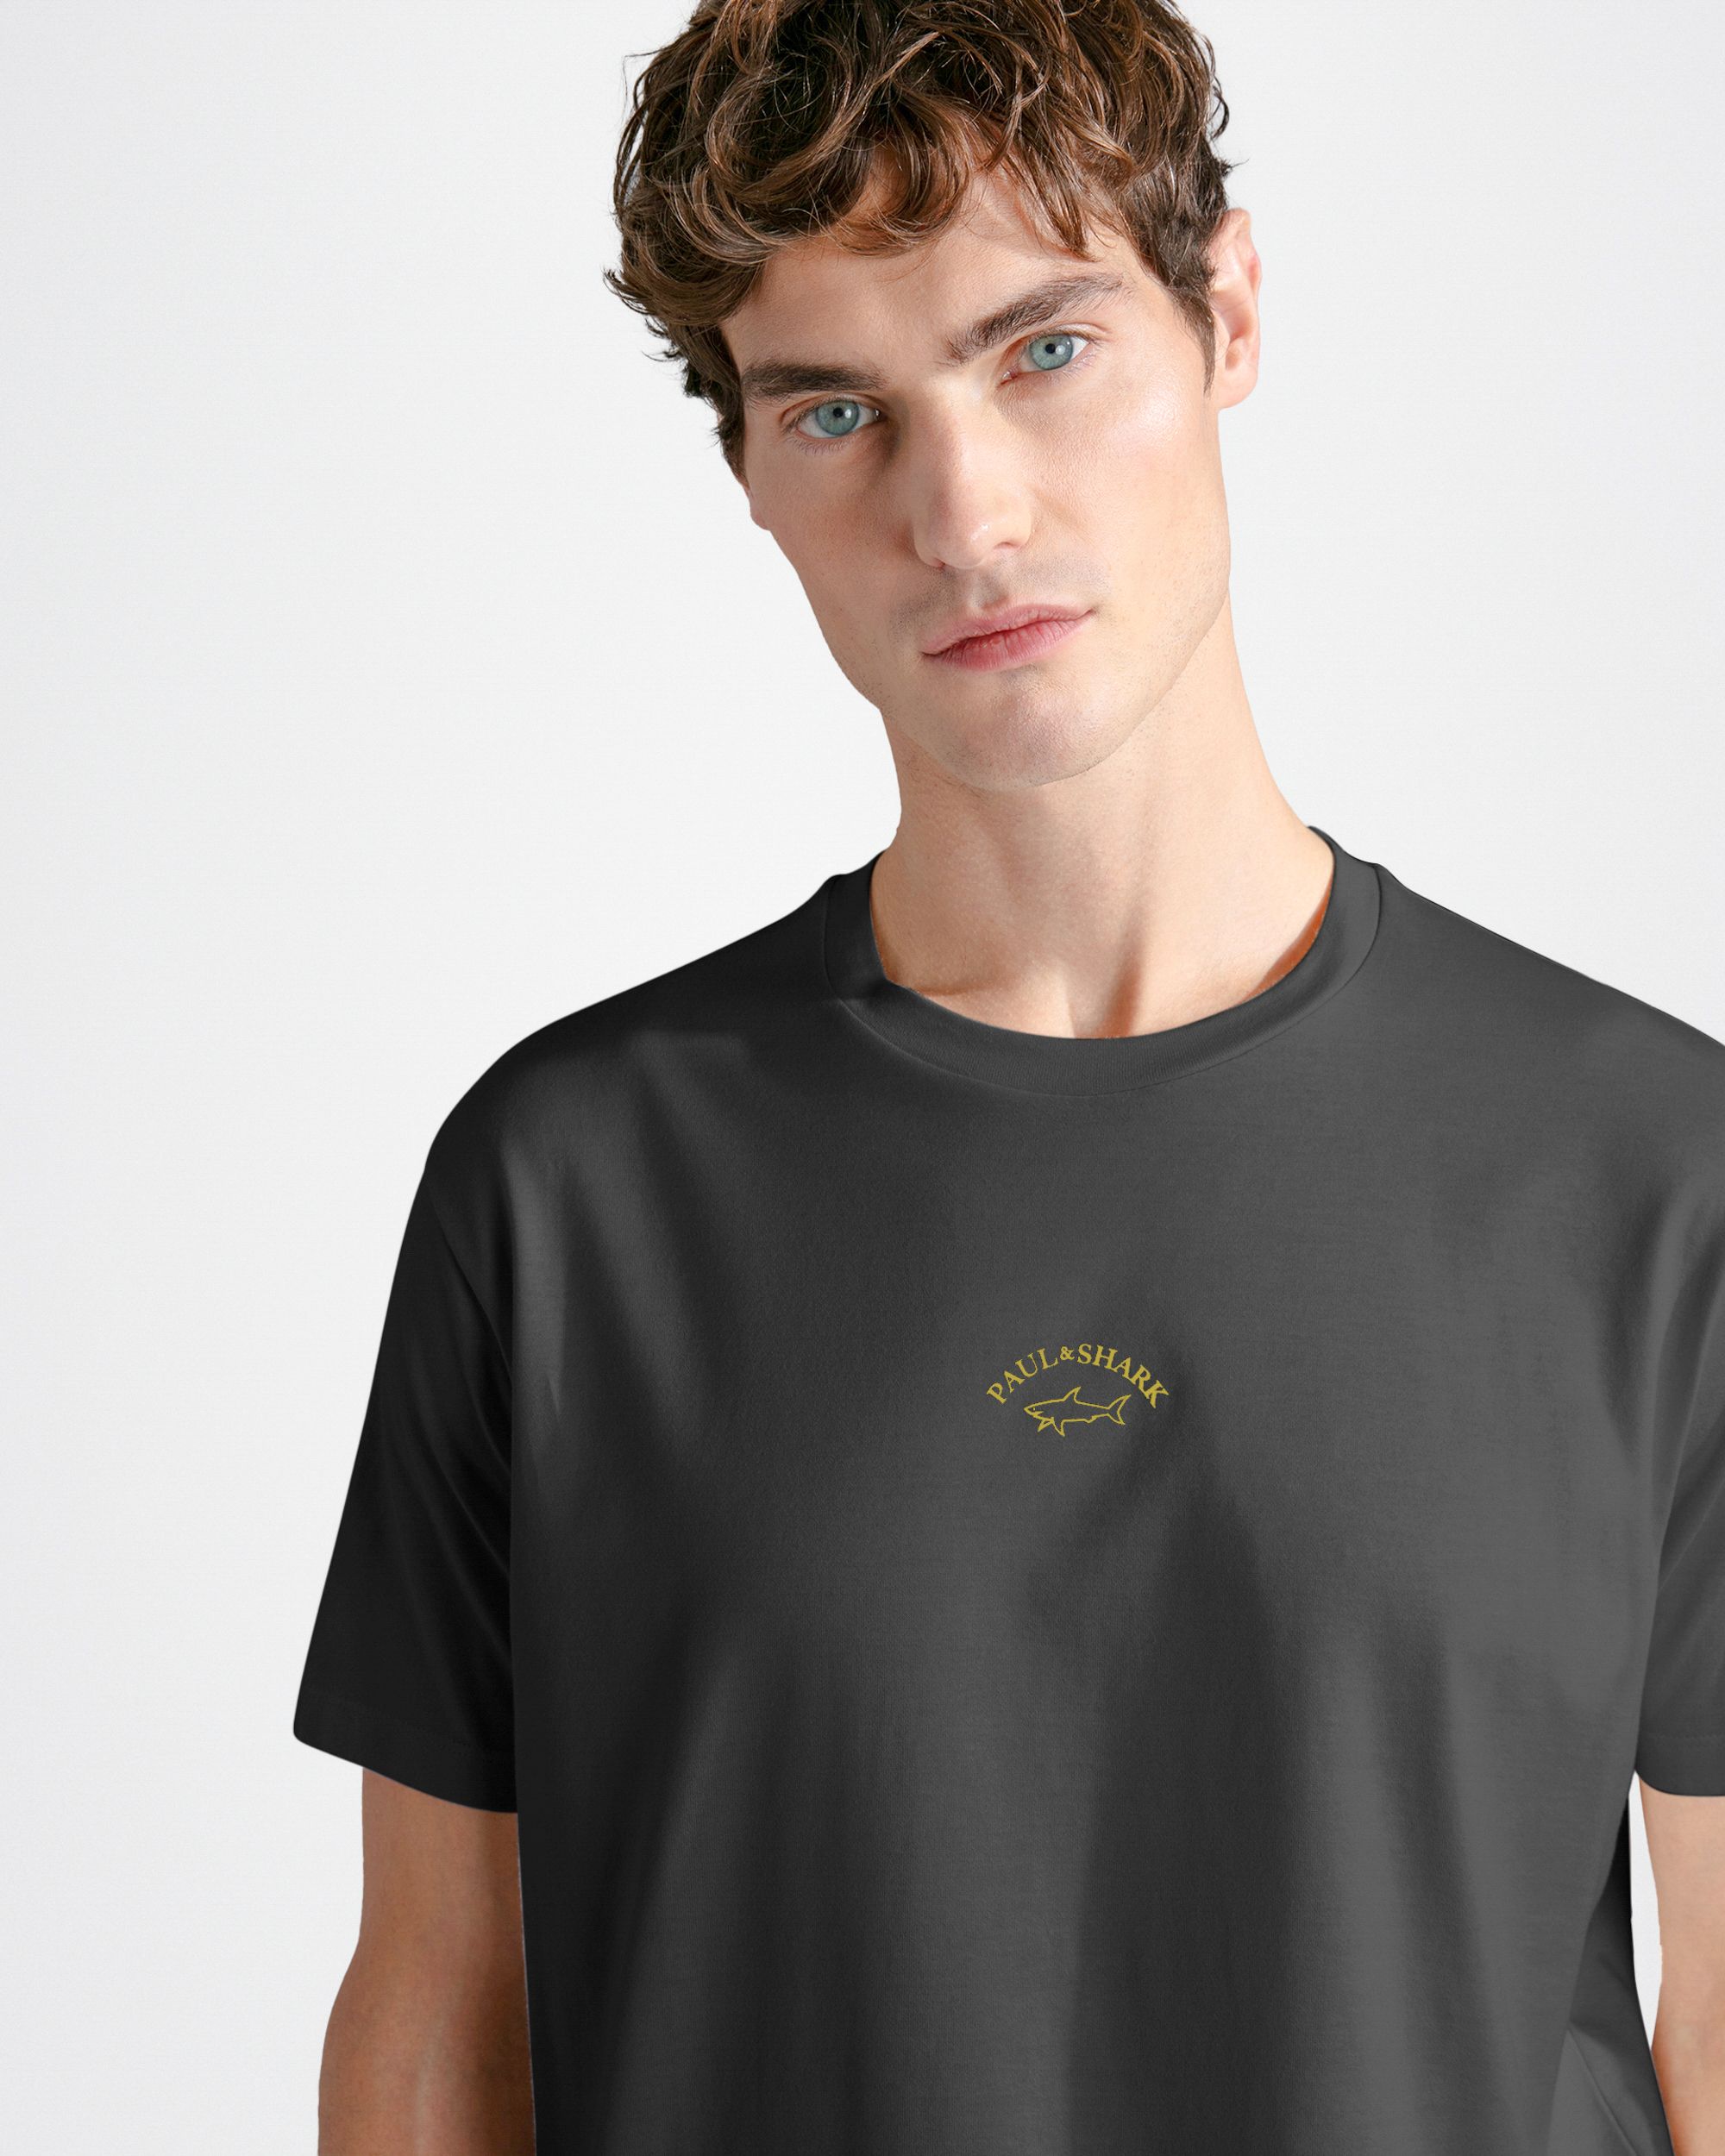 Paul & Shark T-shirt KM Zwart 092030-001-L